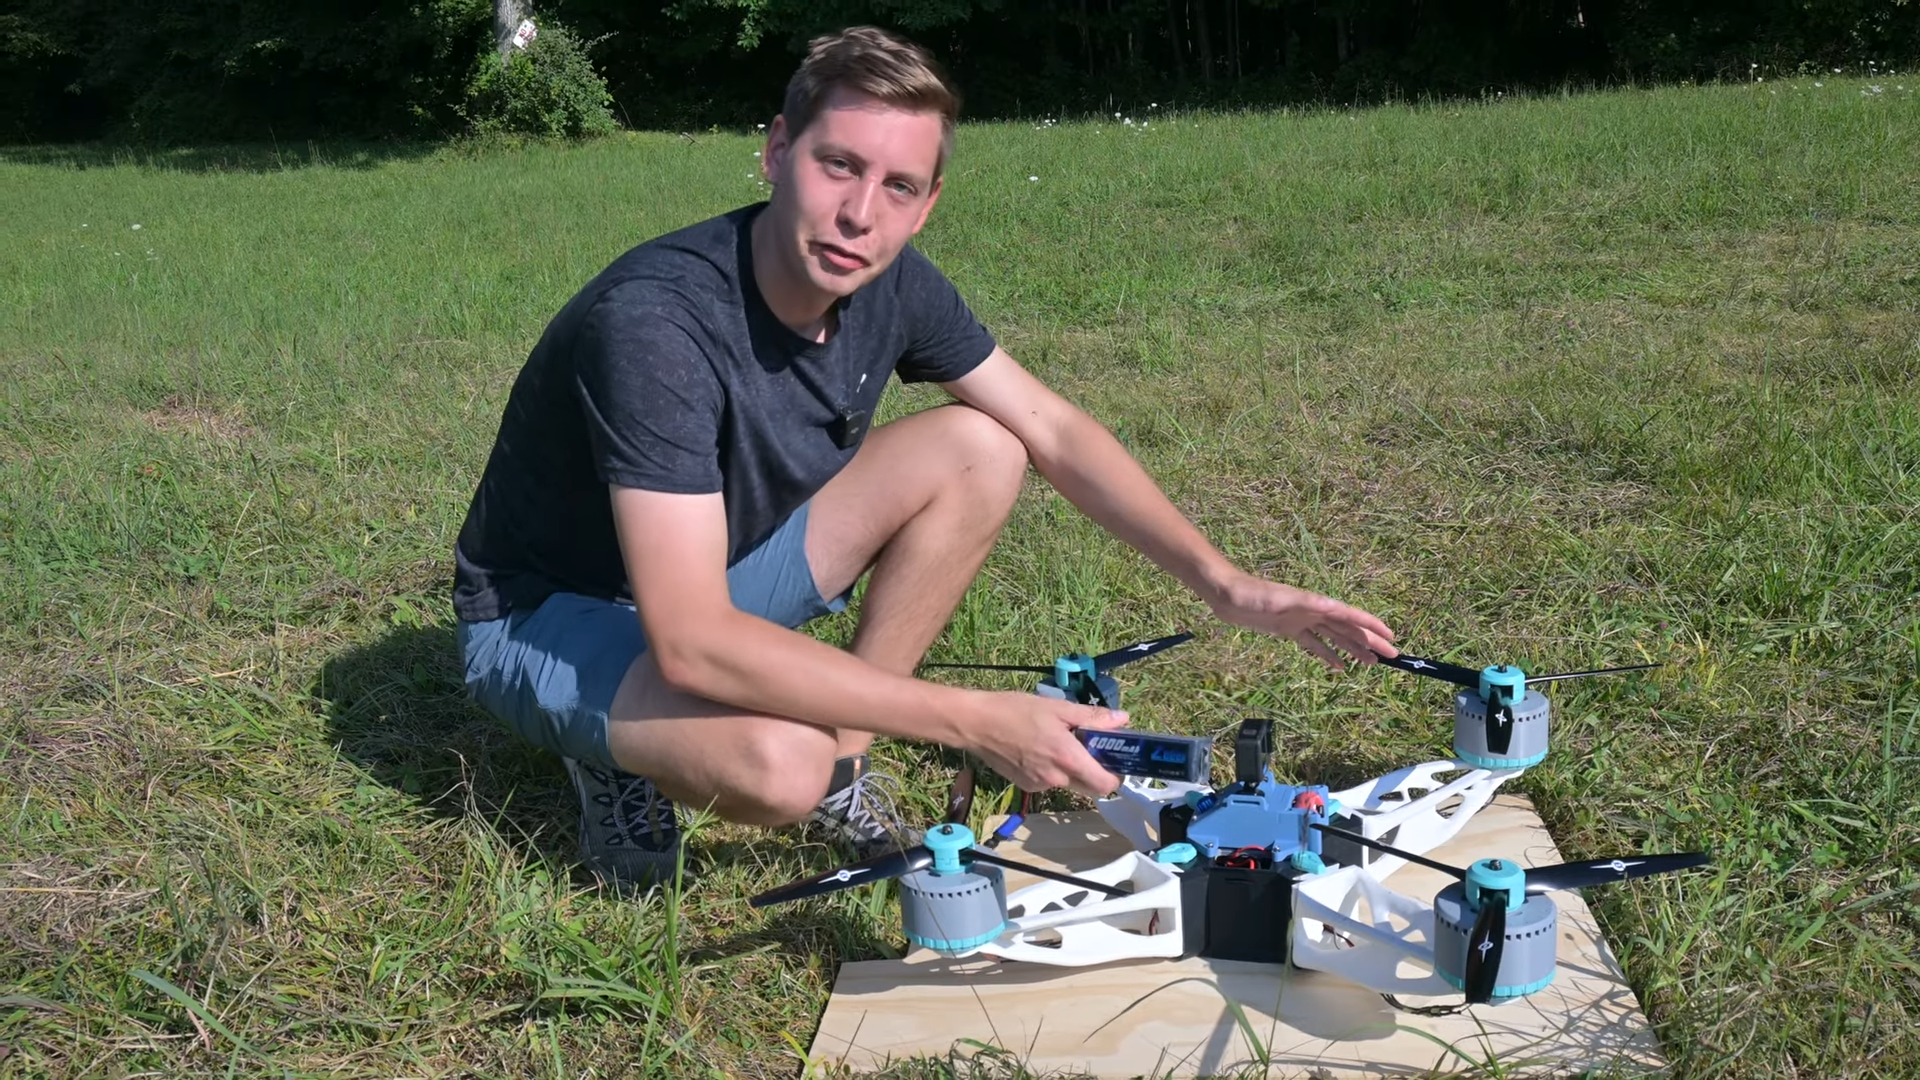 Un cuadricóptero impreso en 3D tiene un final desagradable